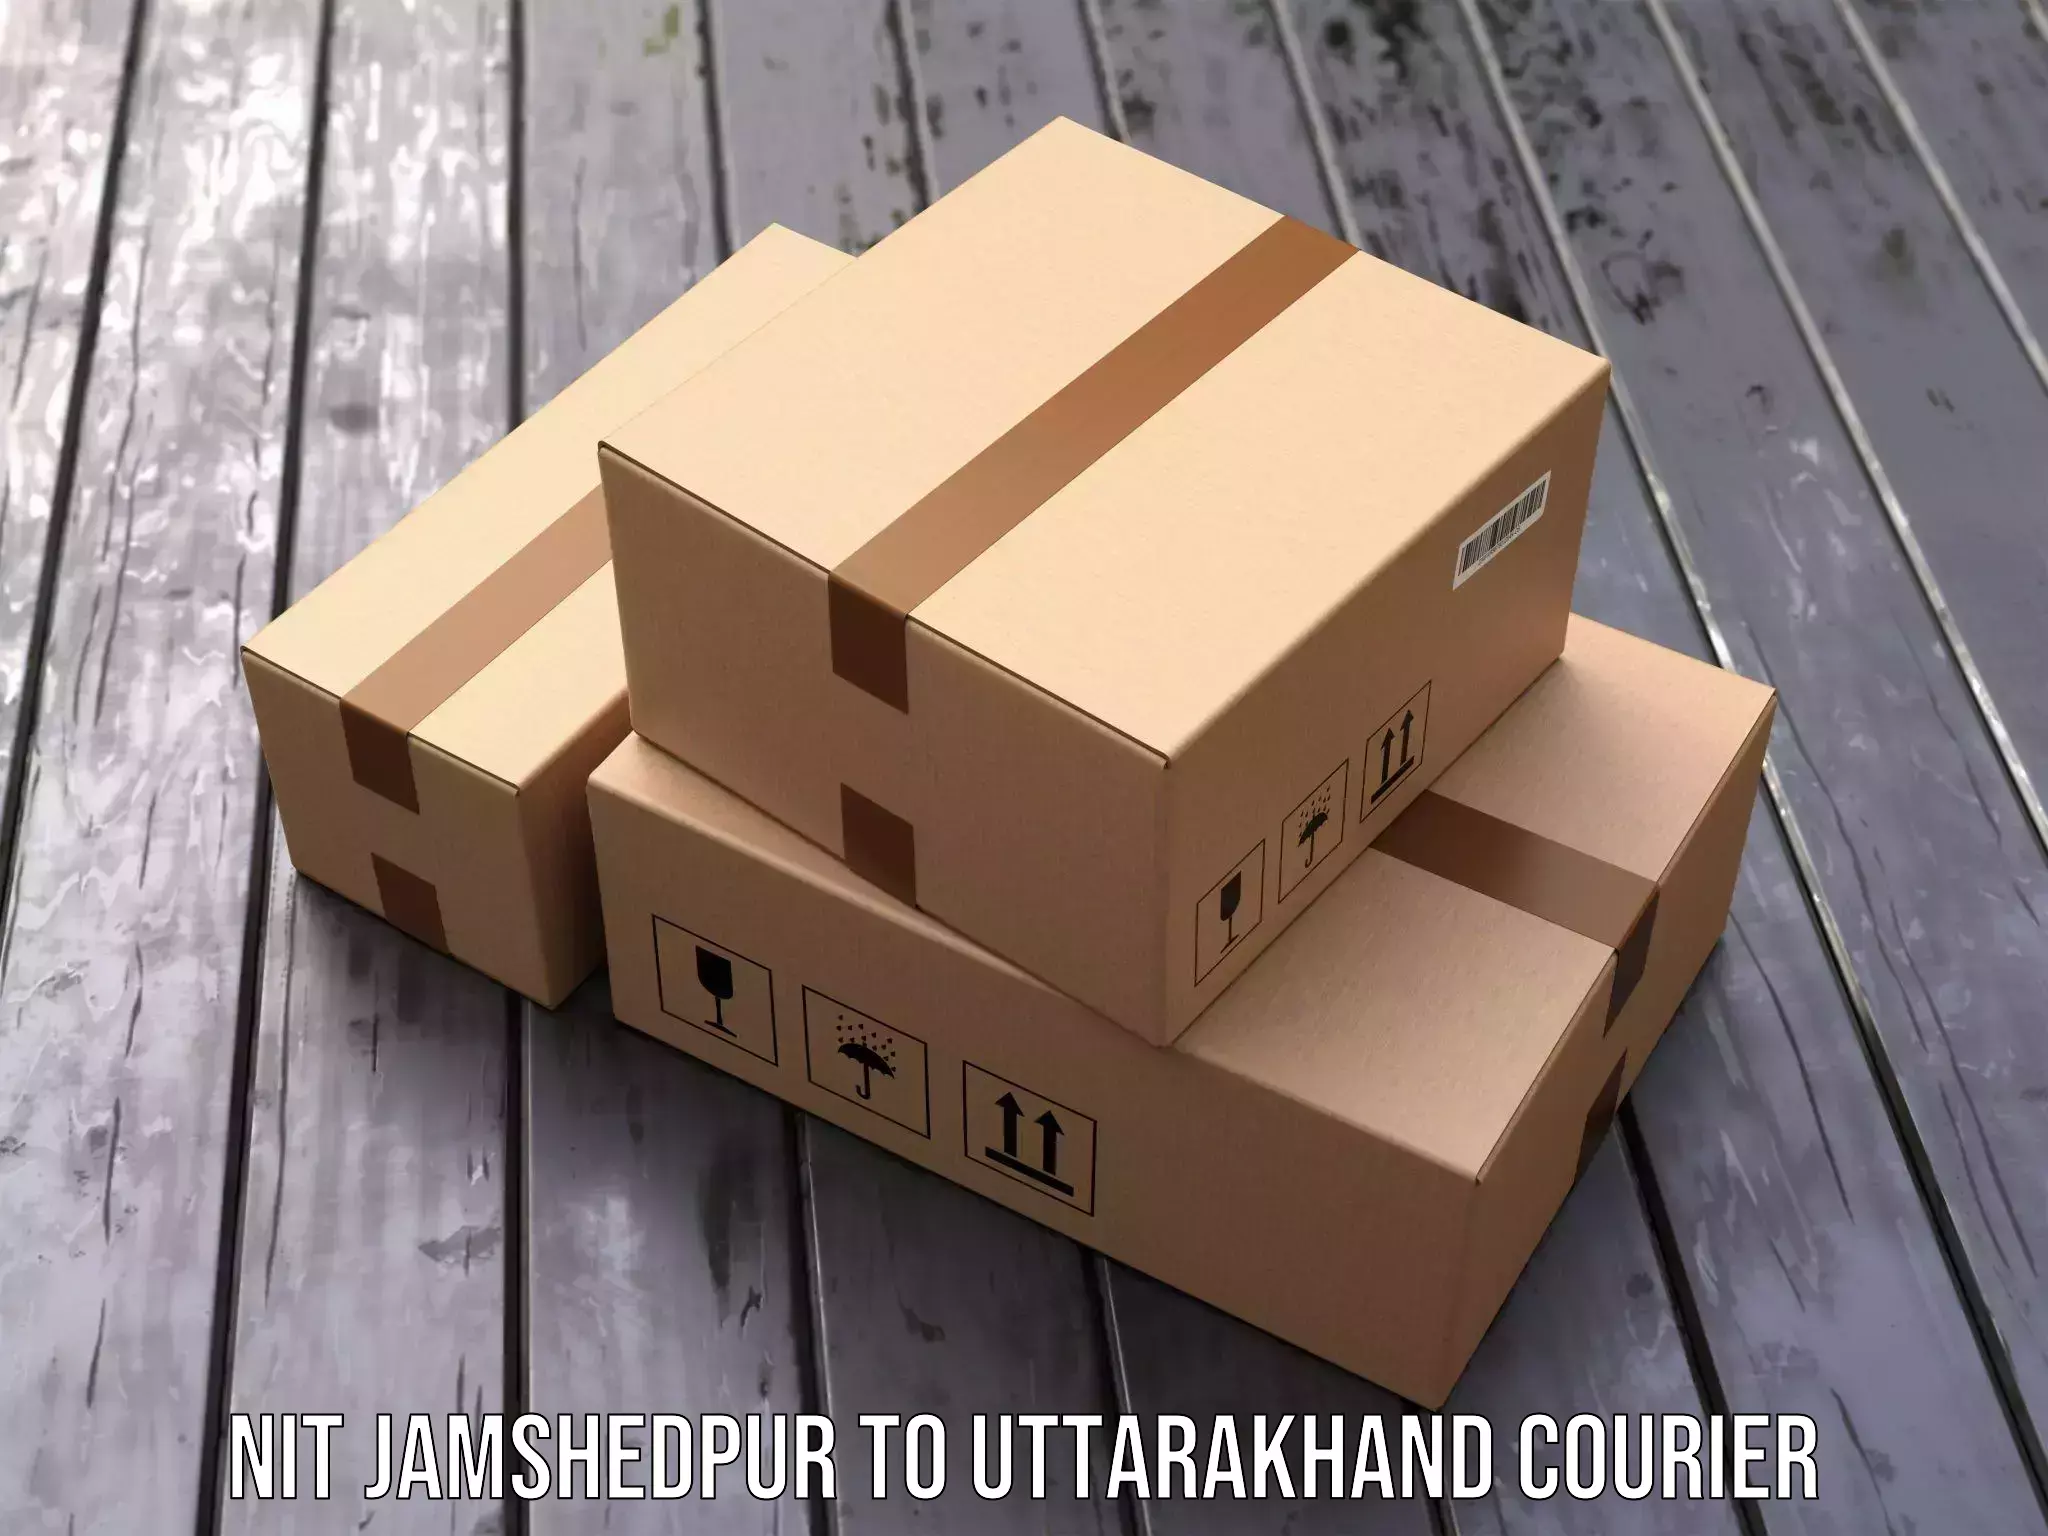 User-friendly delivery service NIT Jamshedpur to Bageshwar